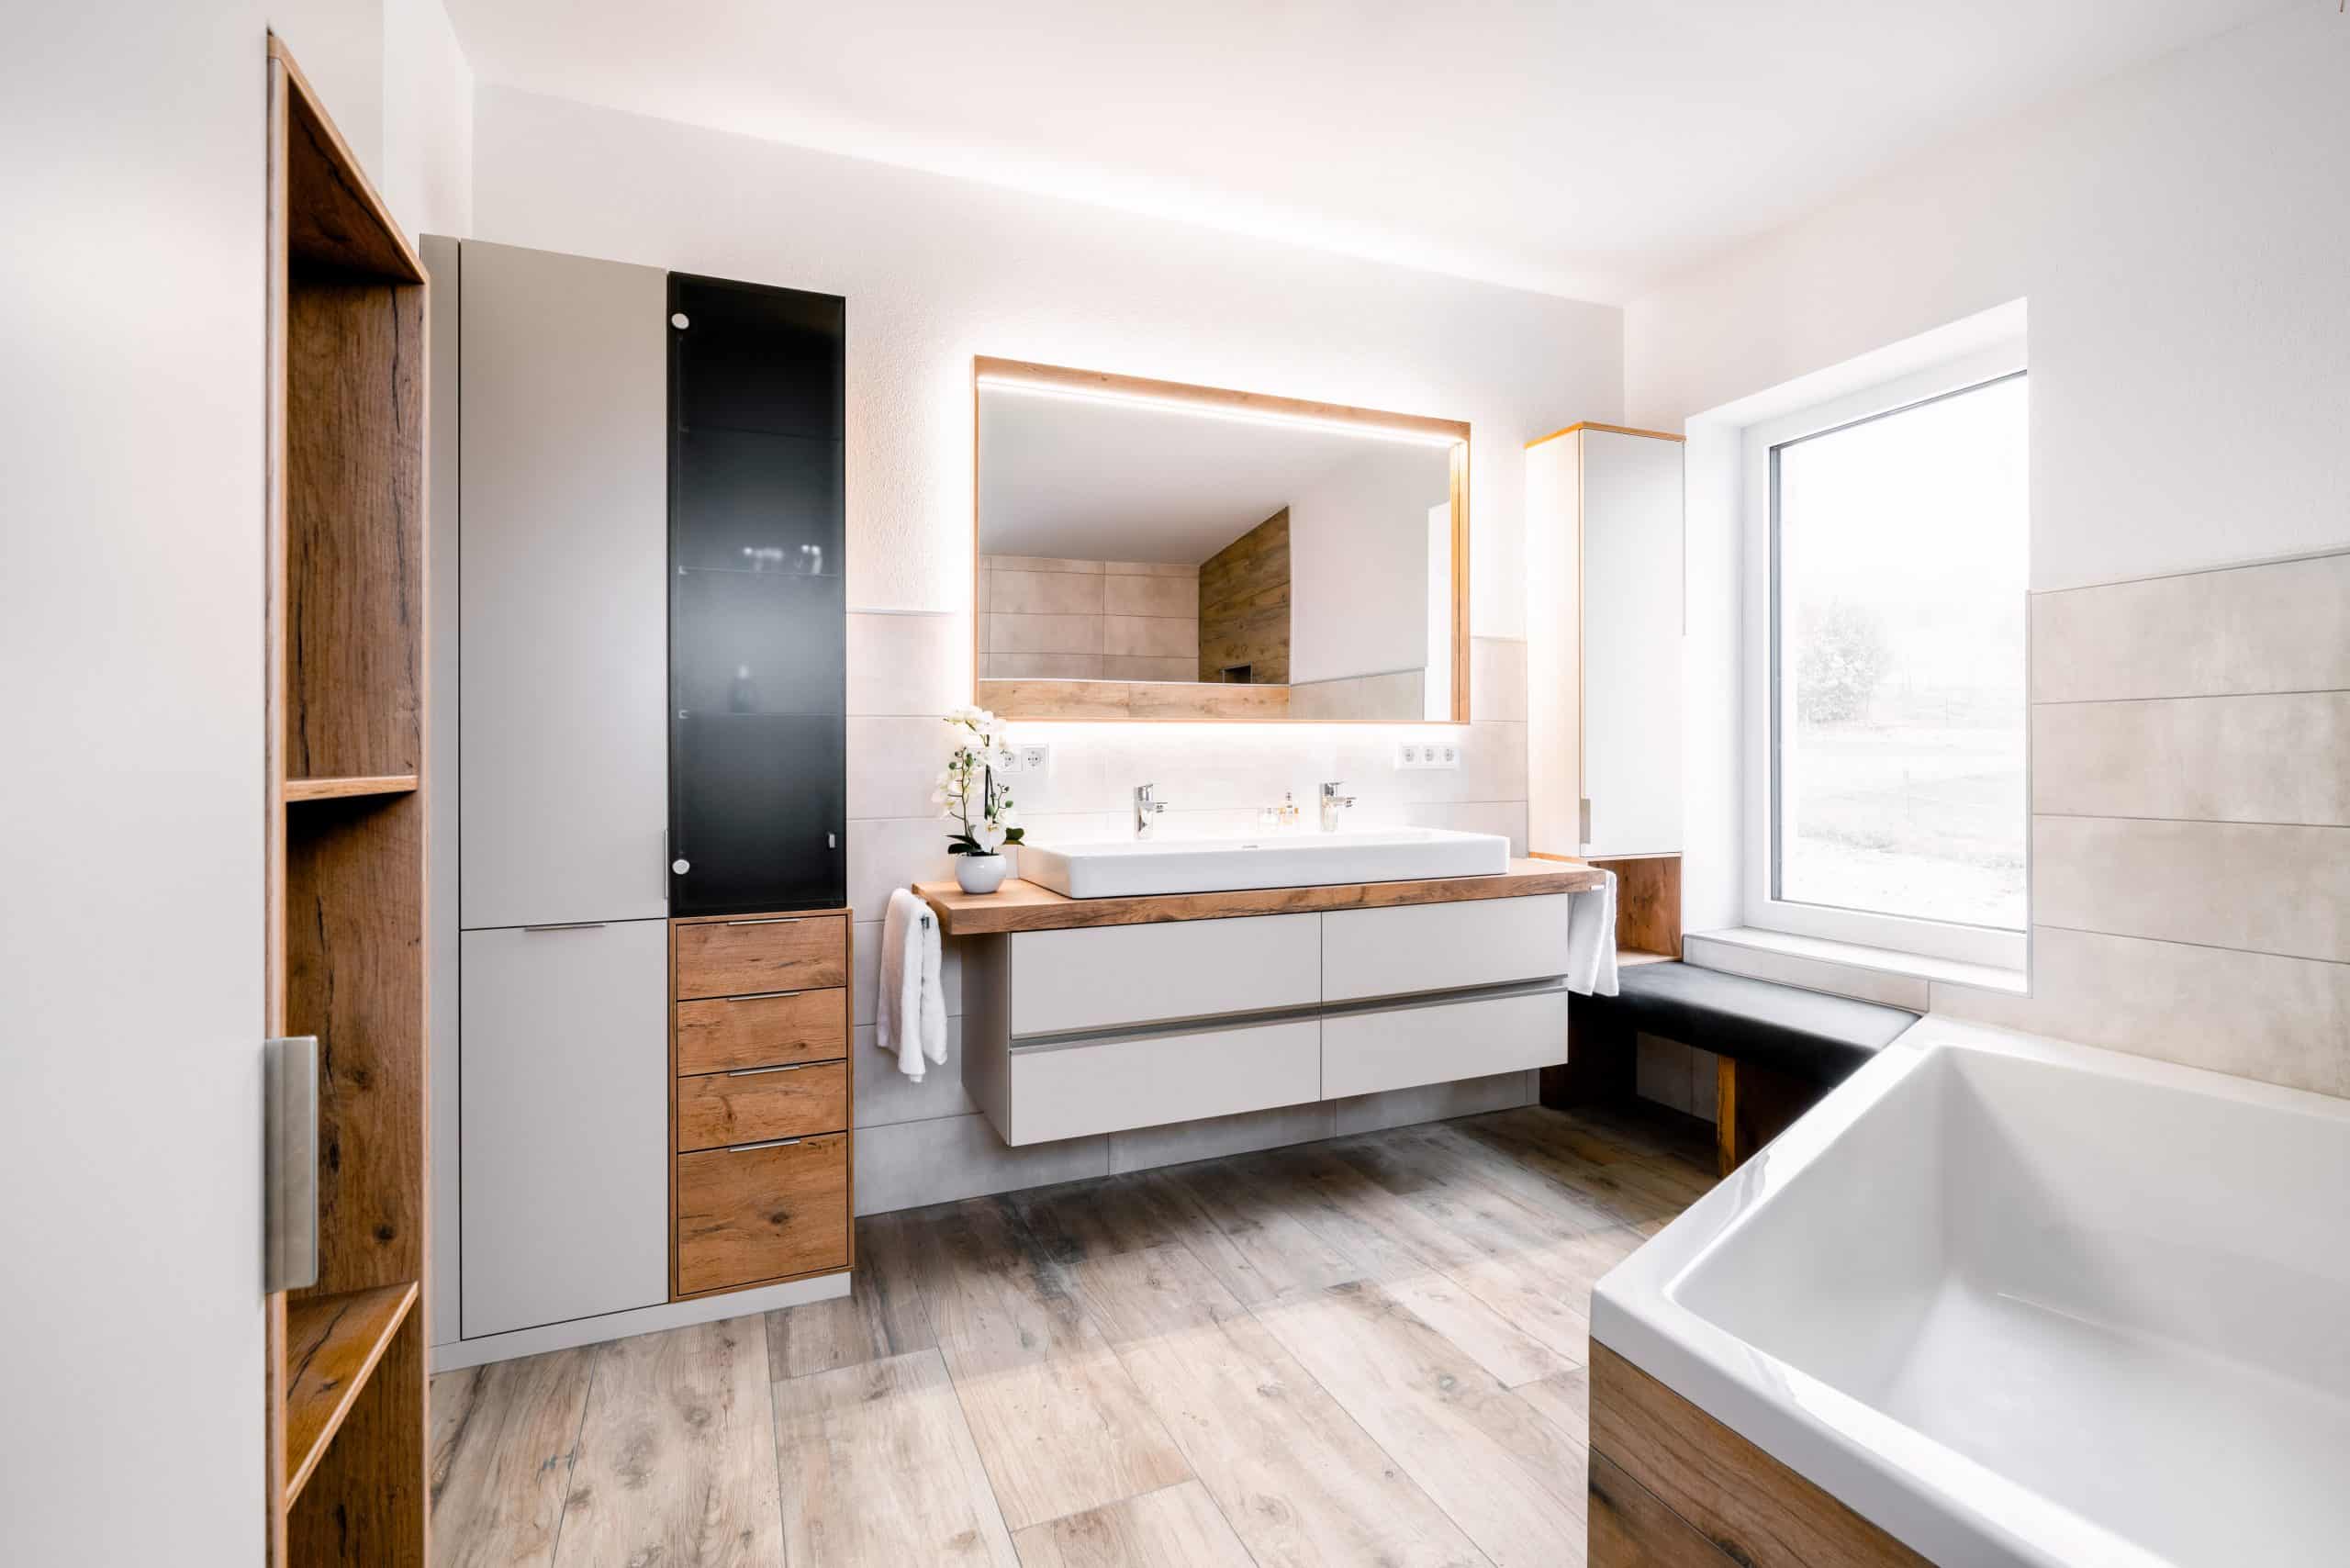 BÖHM MÖBEL zeigt ein Badezimmer in weiß mit Holzelementen, einem Doppelwaschbecken und großer Badewanne.